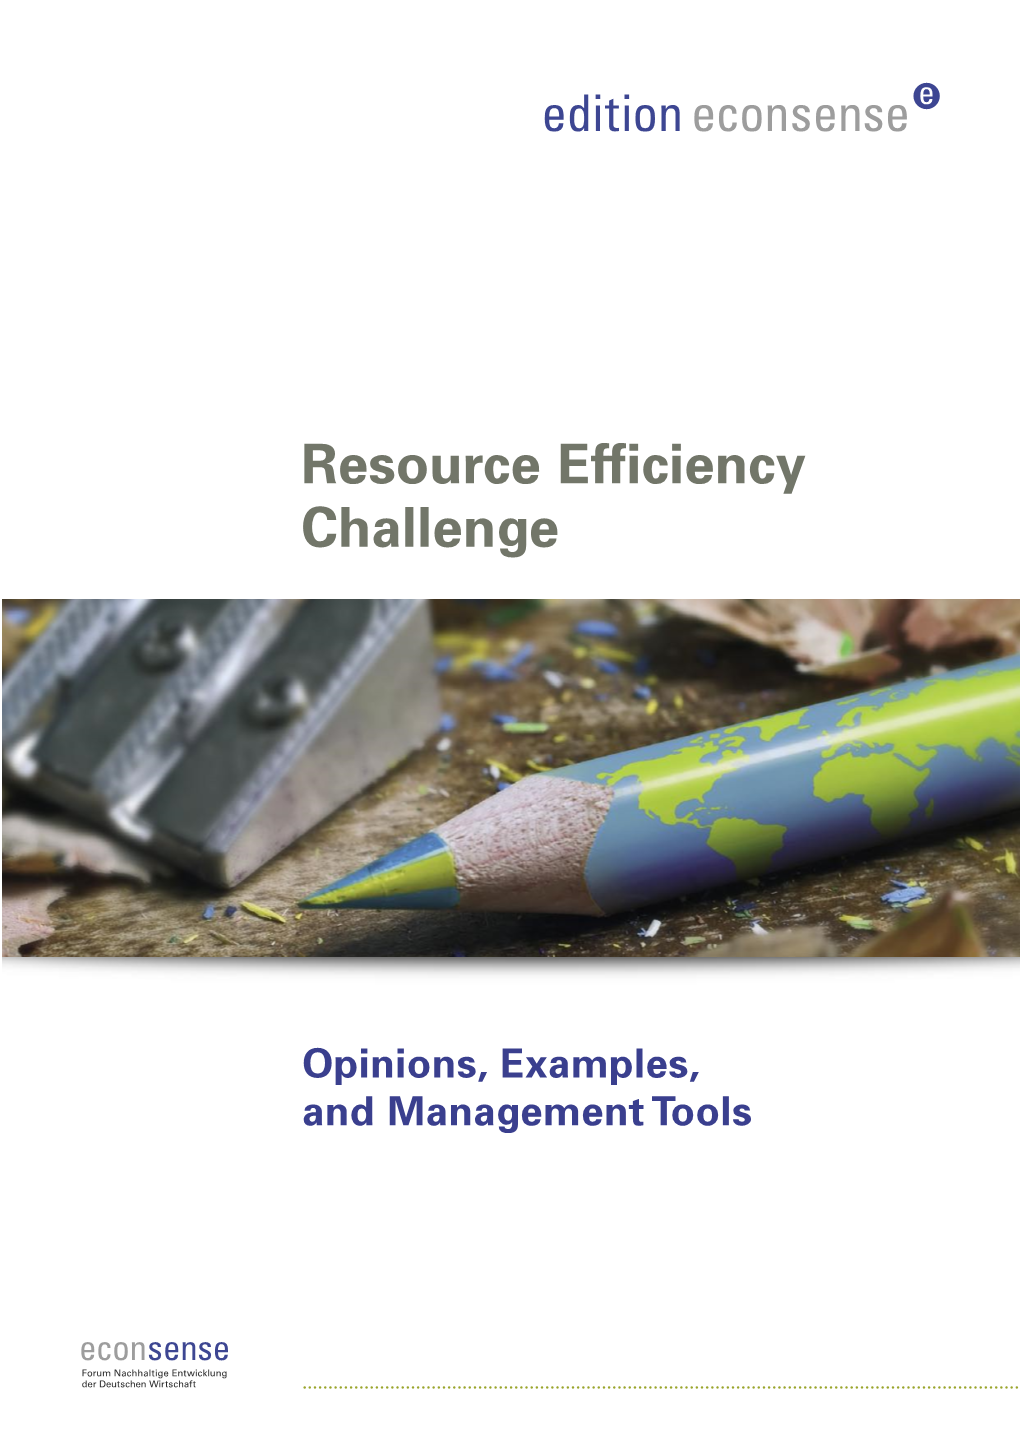 Resource Efficiency Challenge